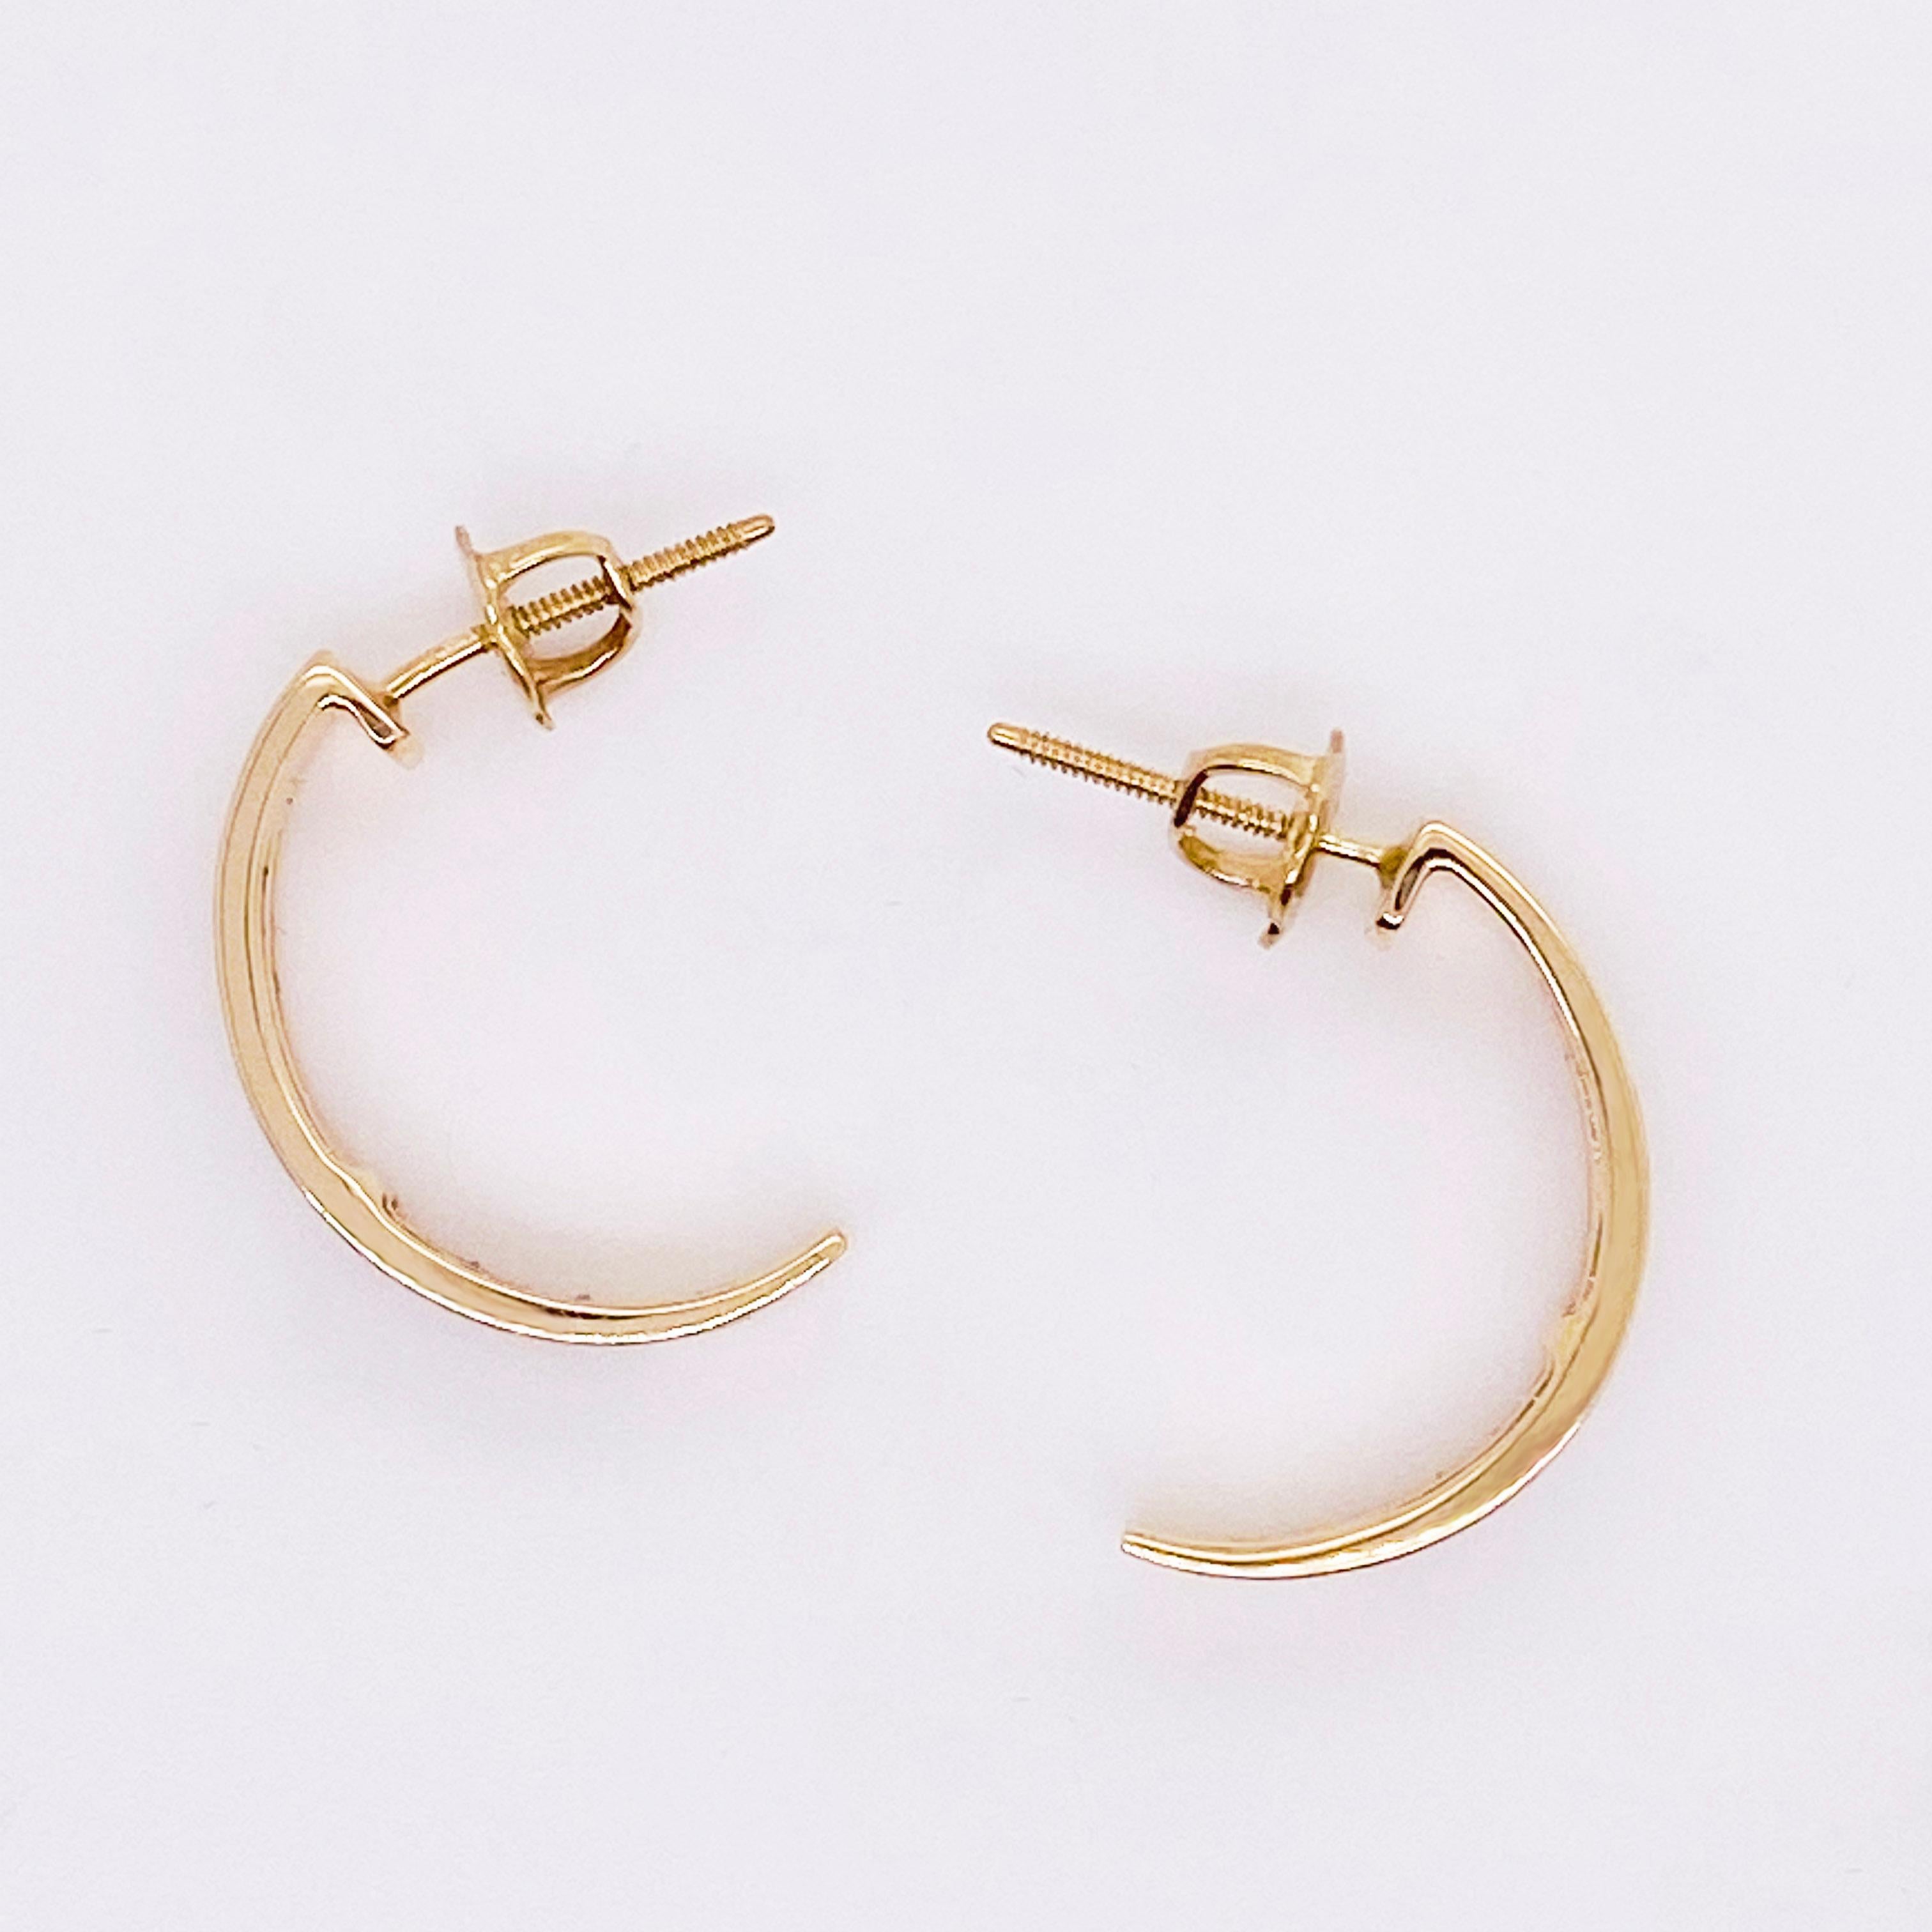 Round Cut Gold Diamond Earrings, 14 Karat Gold, J Hook Earrings, 48 Diamonds, 1/2 Carat For Sale